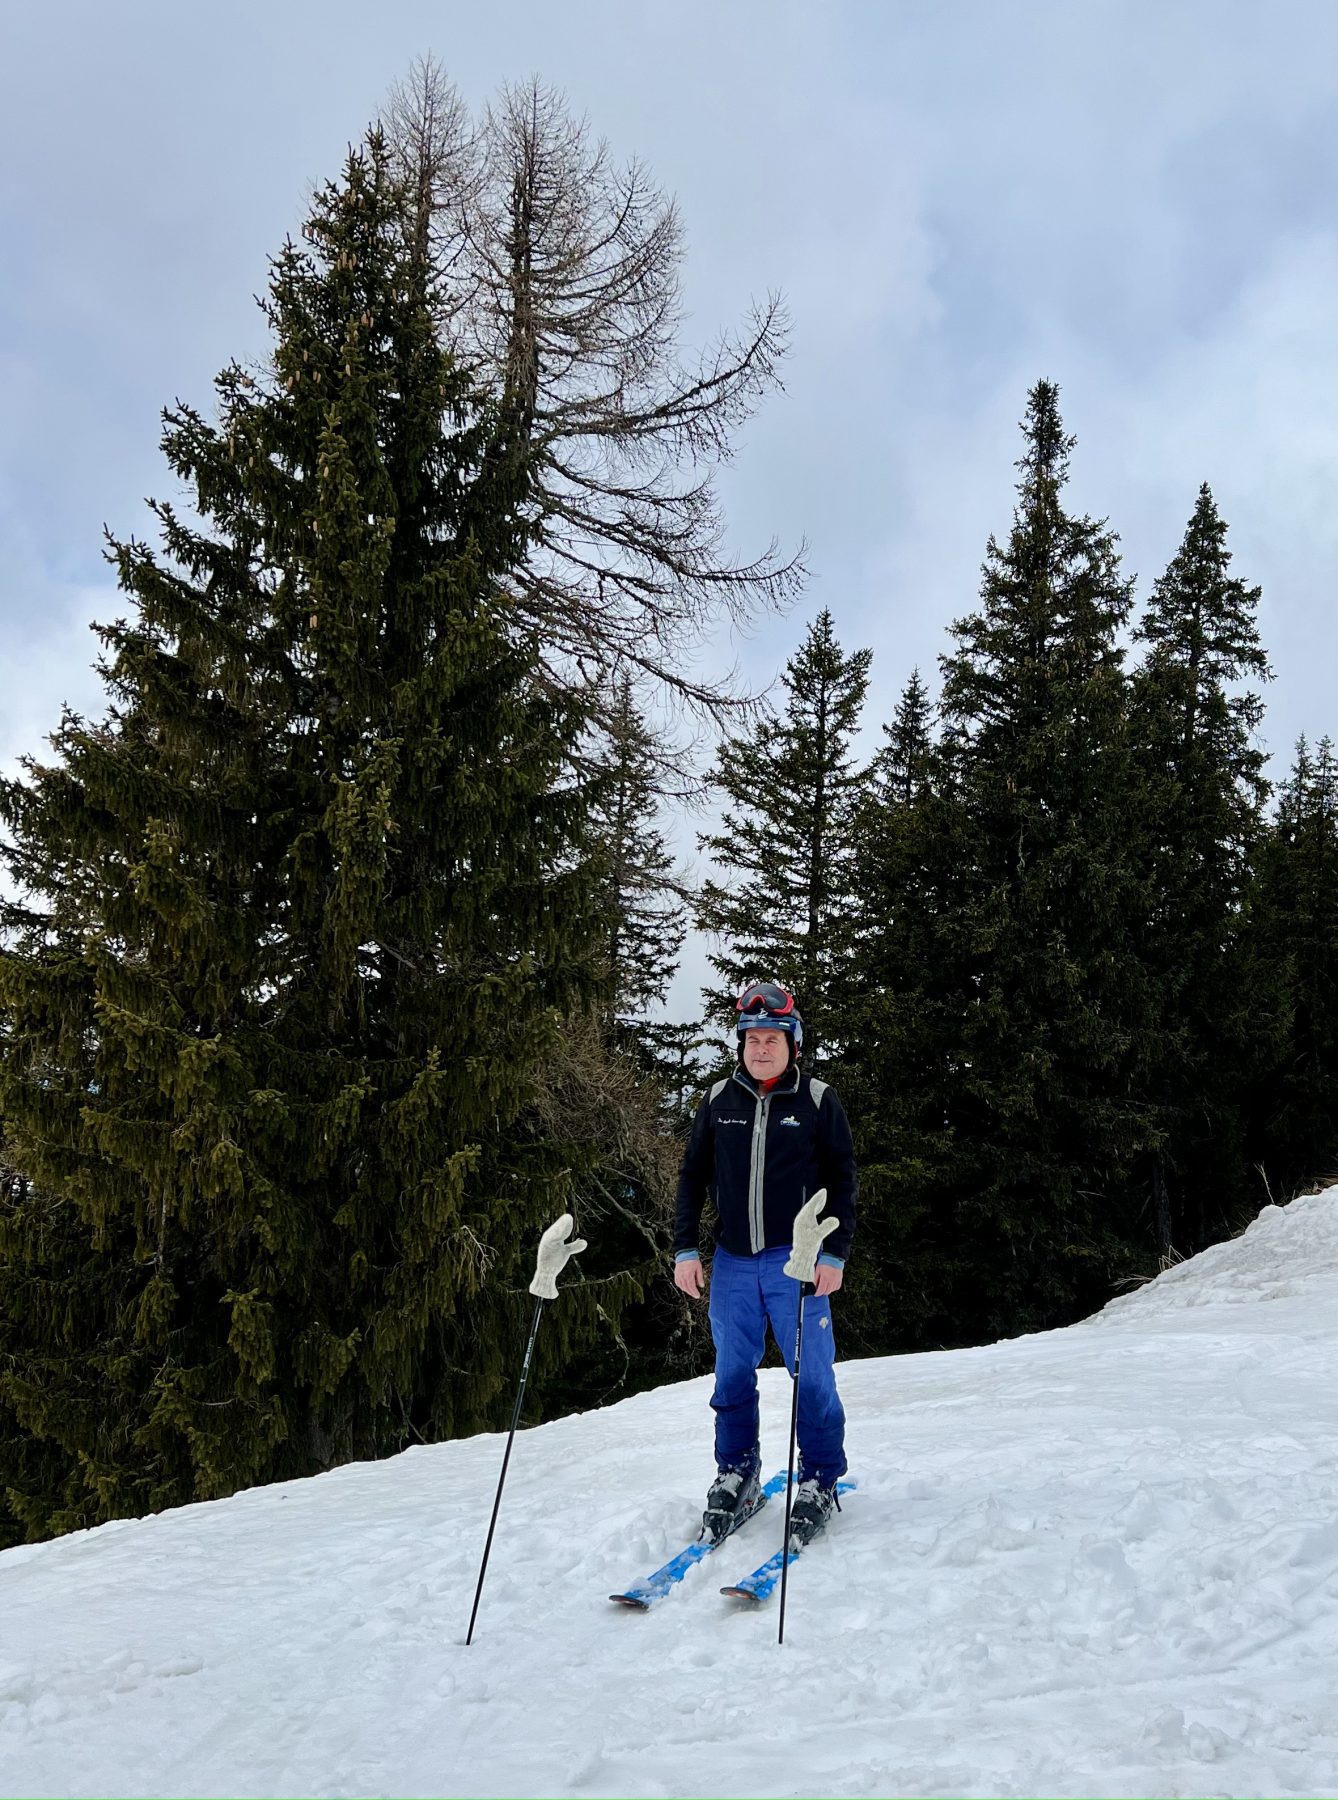 stilstaande man op ski's in de sneeuw